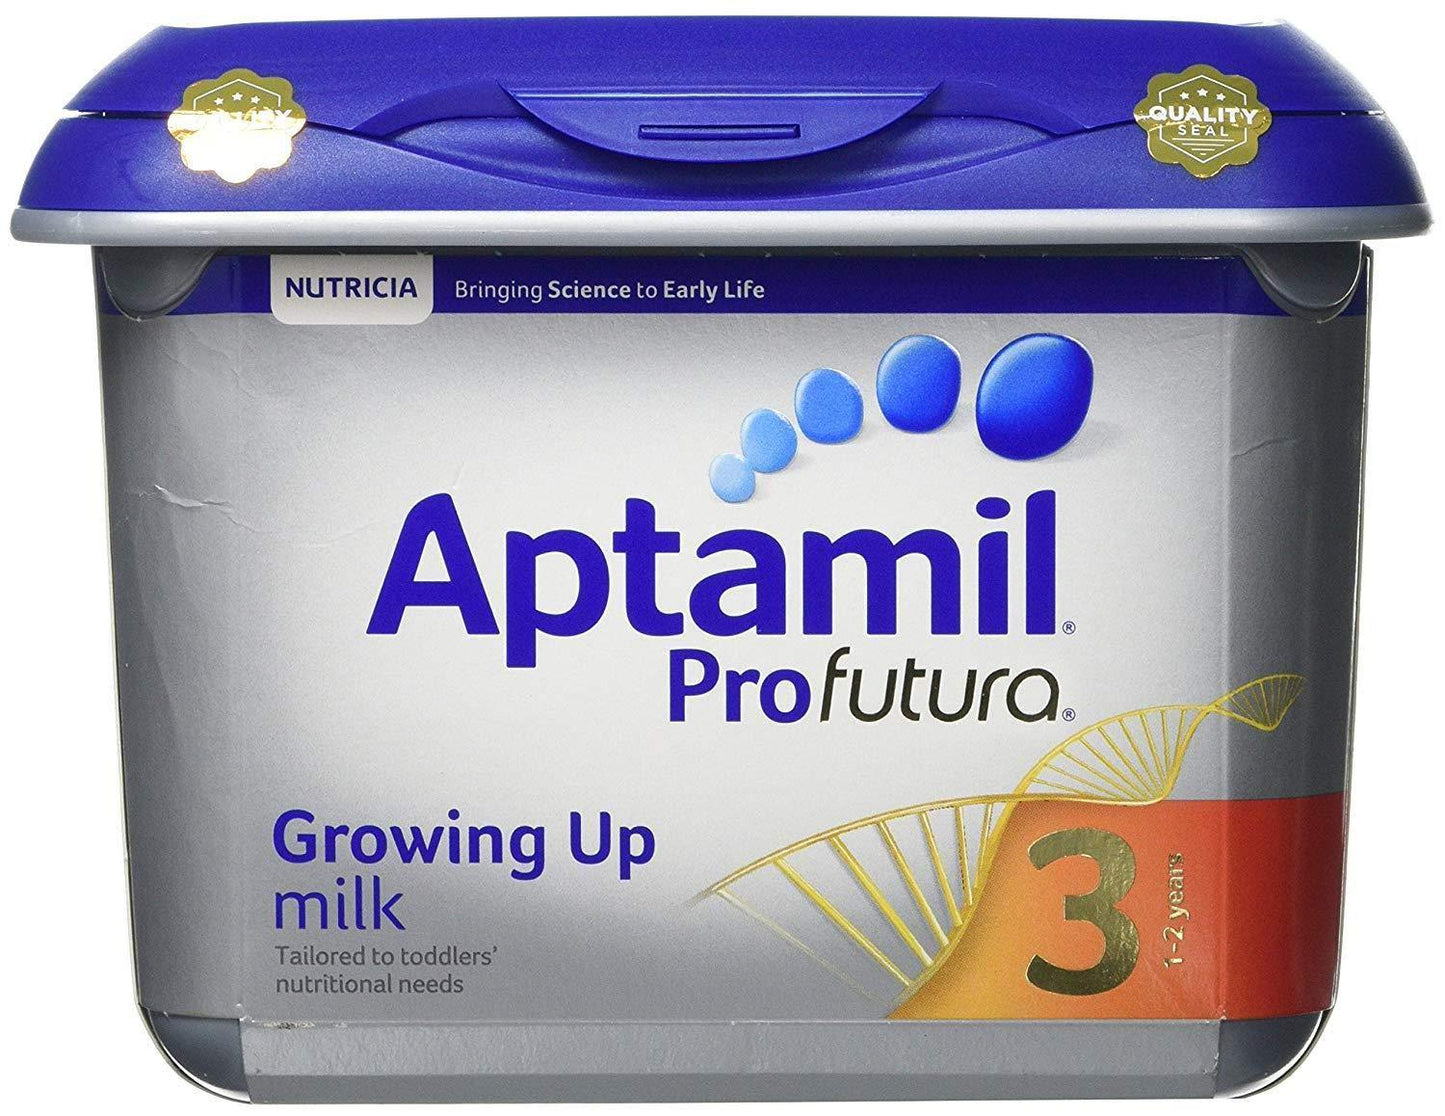 Aptamil Profutura Growing Milk 3 - welzo